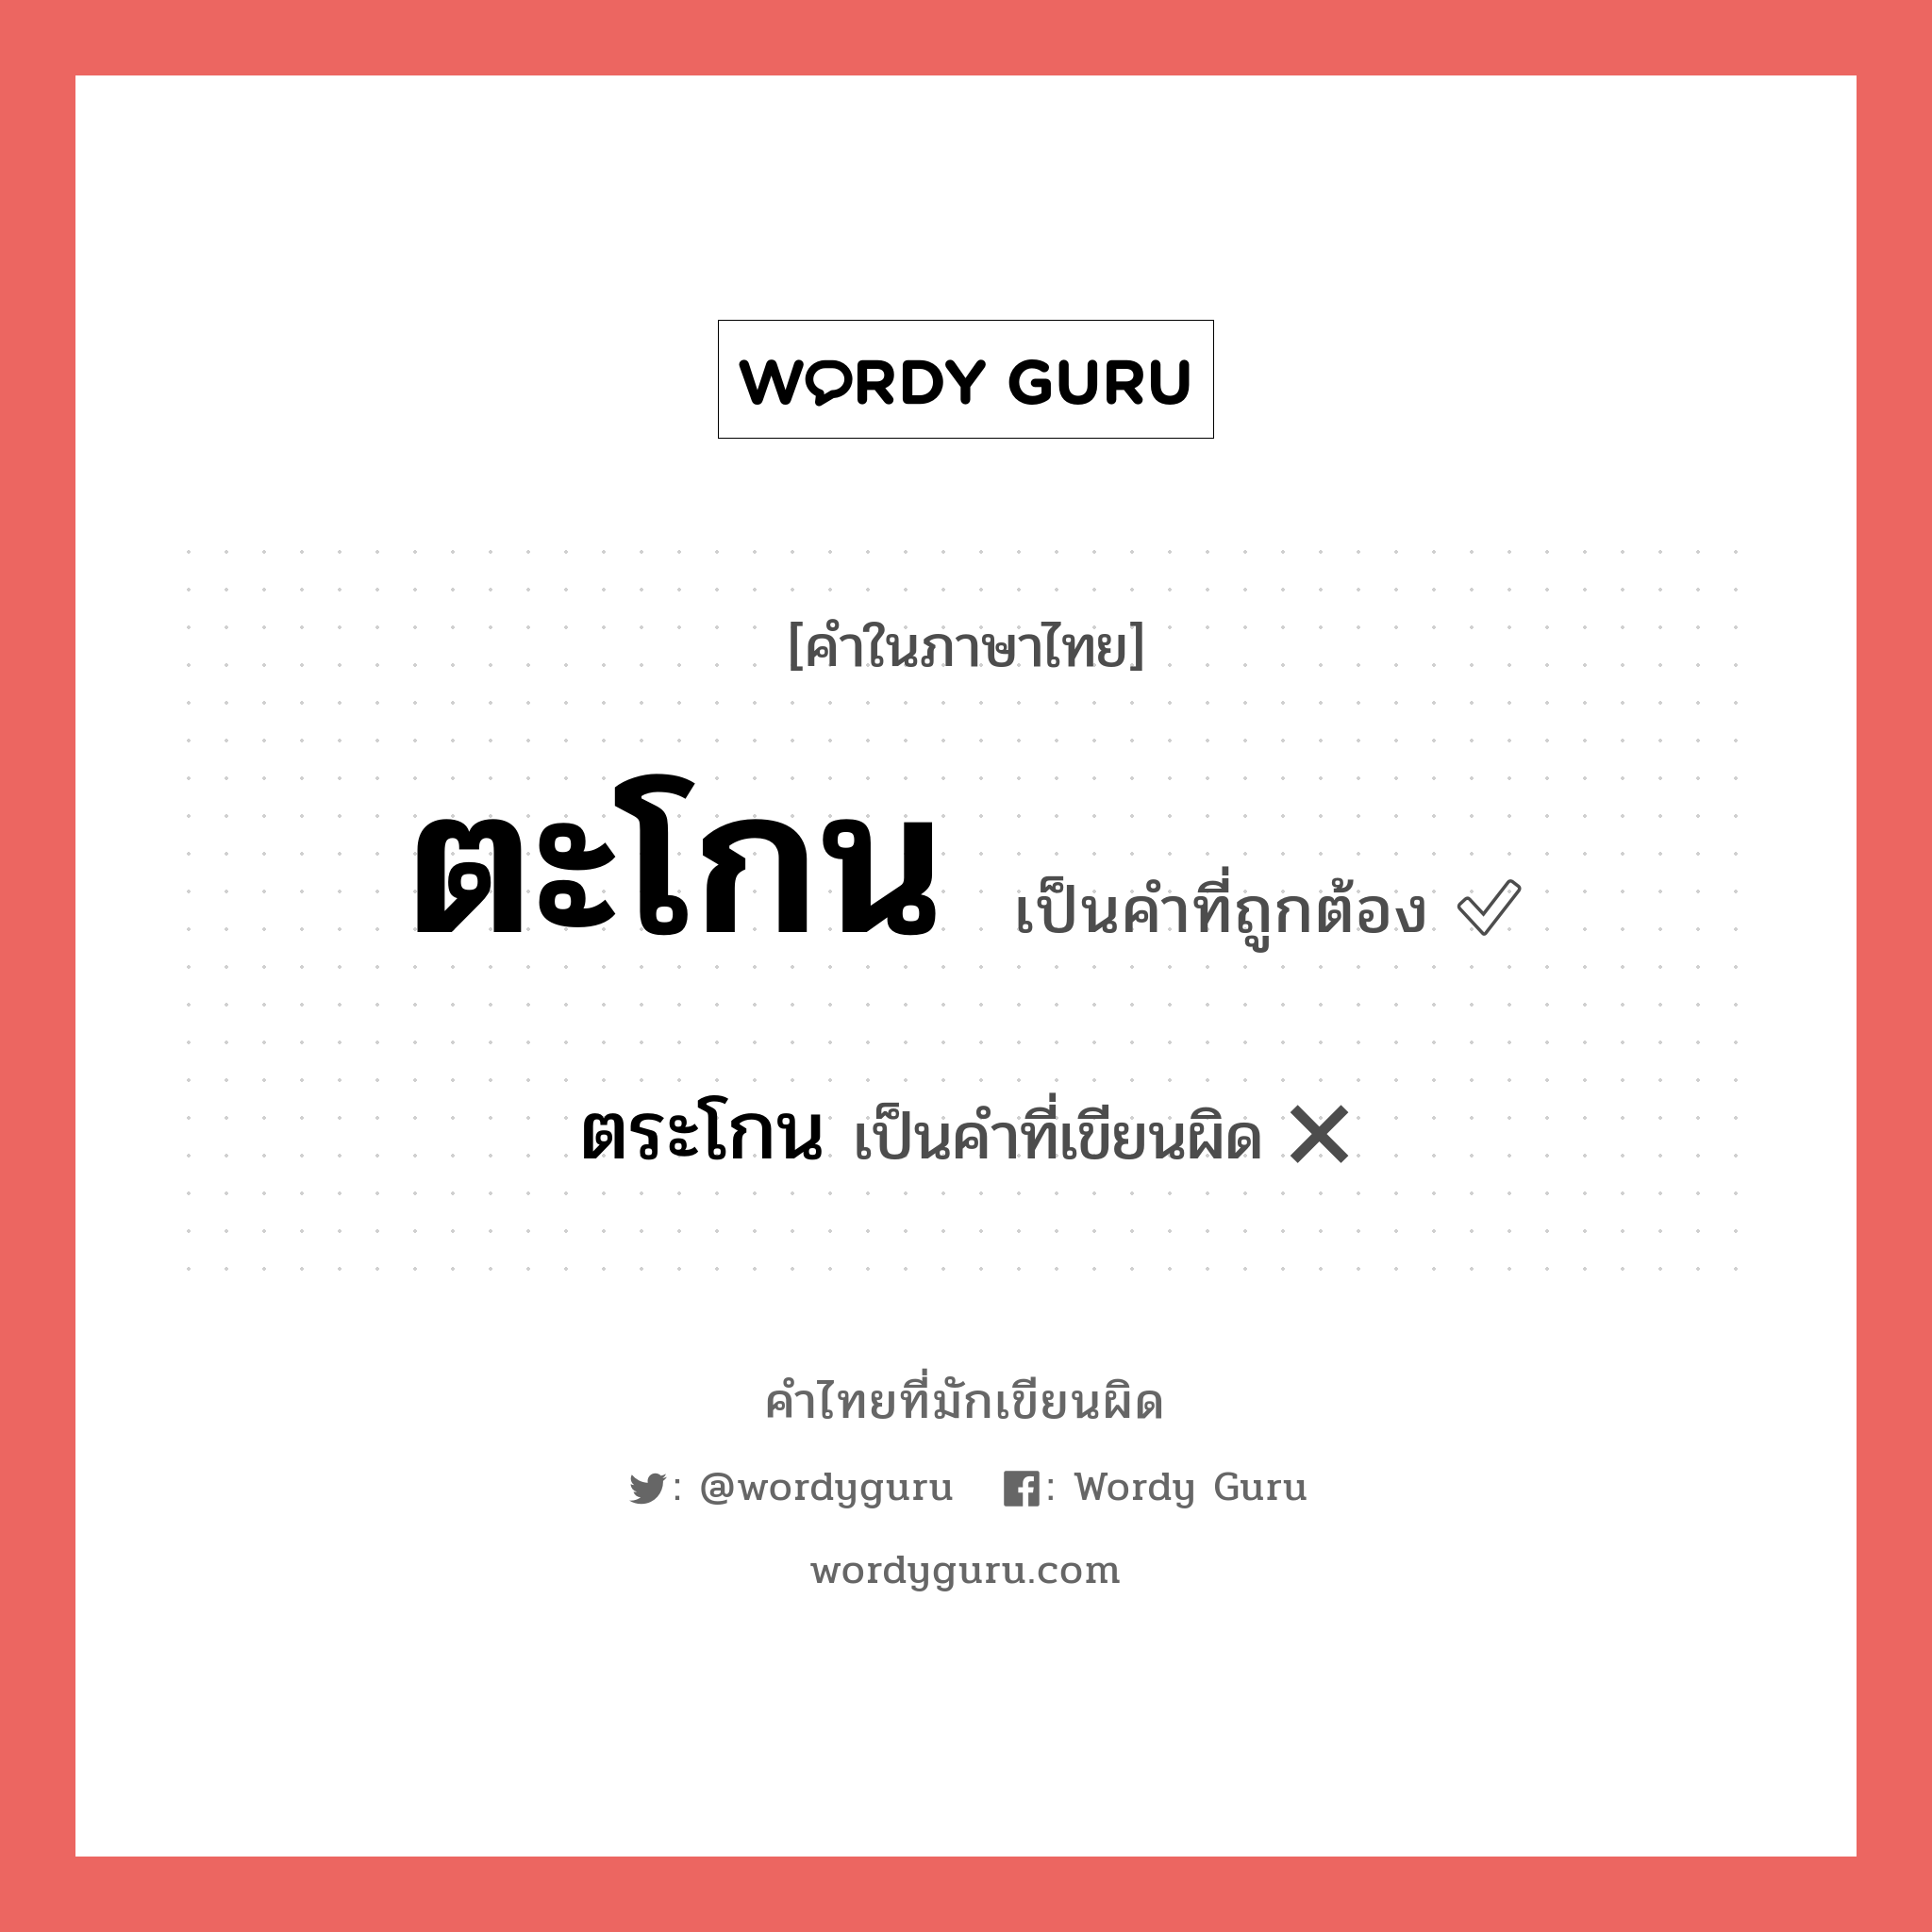 ตะโกน หรือ ตระโกน คำไหนเขียนถูก?, คำในภาษาไทยที่มักเขียนผิด ตะโกน คำที่ผิด ❌ ตระโกน